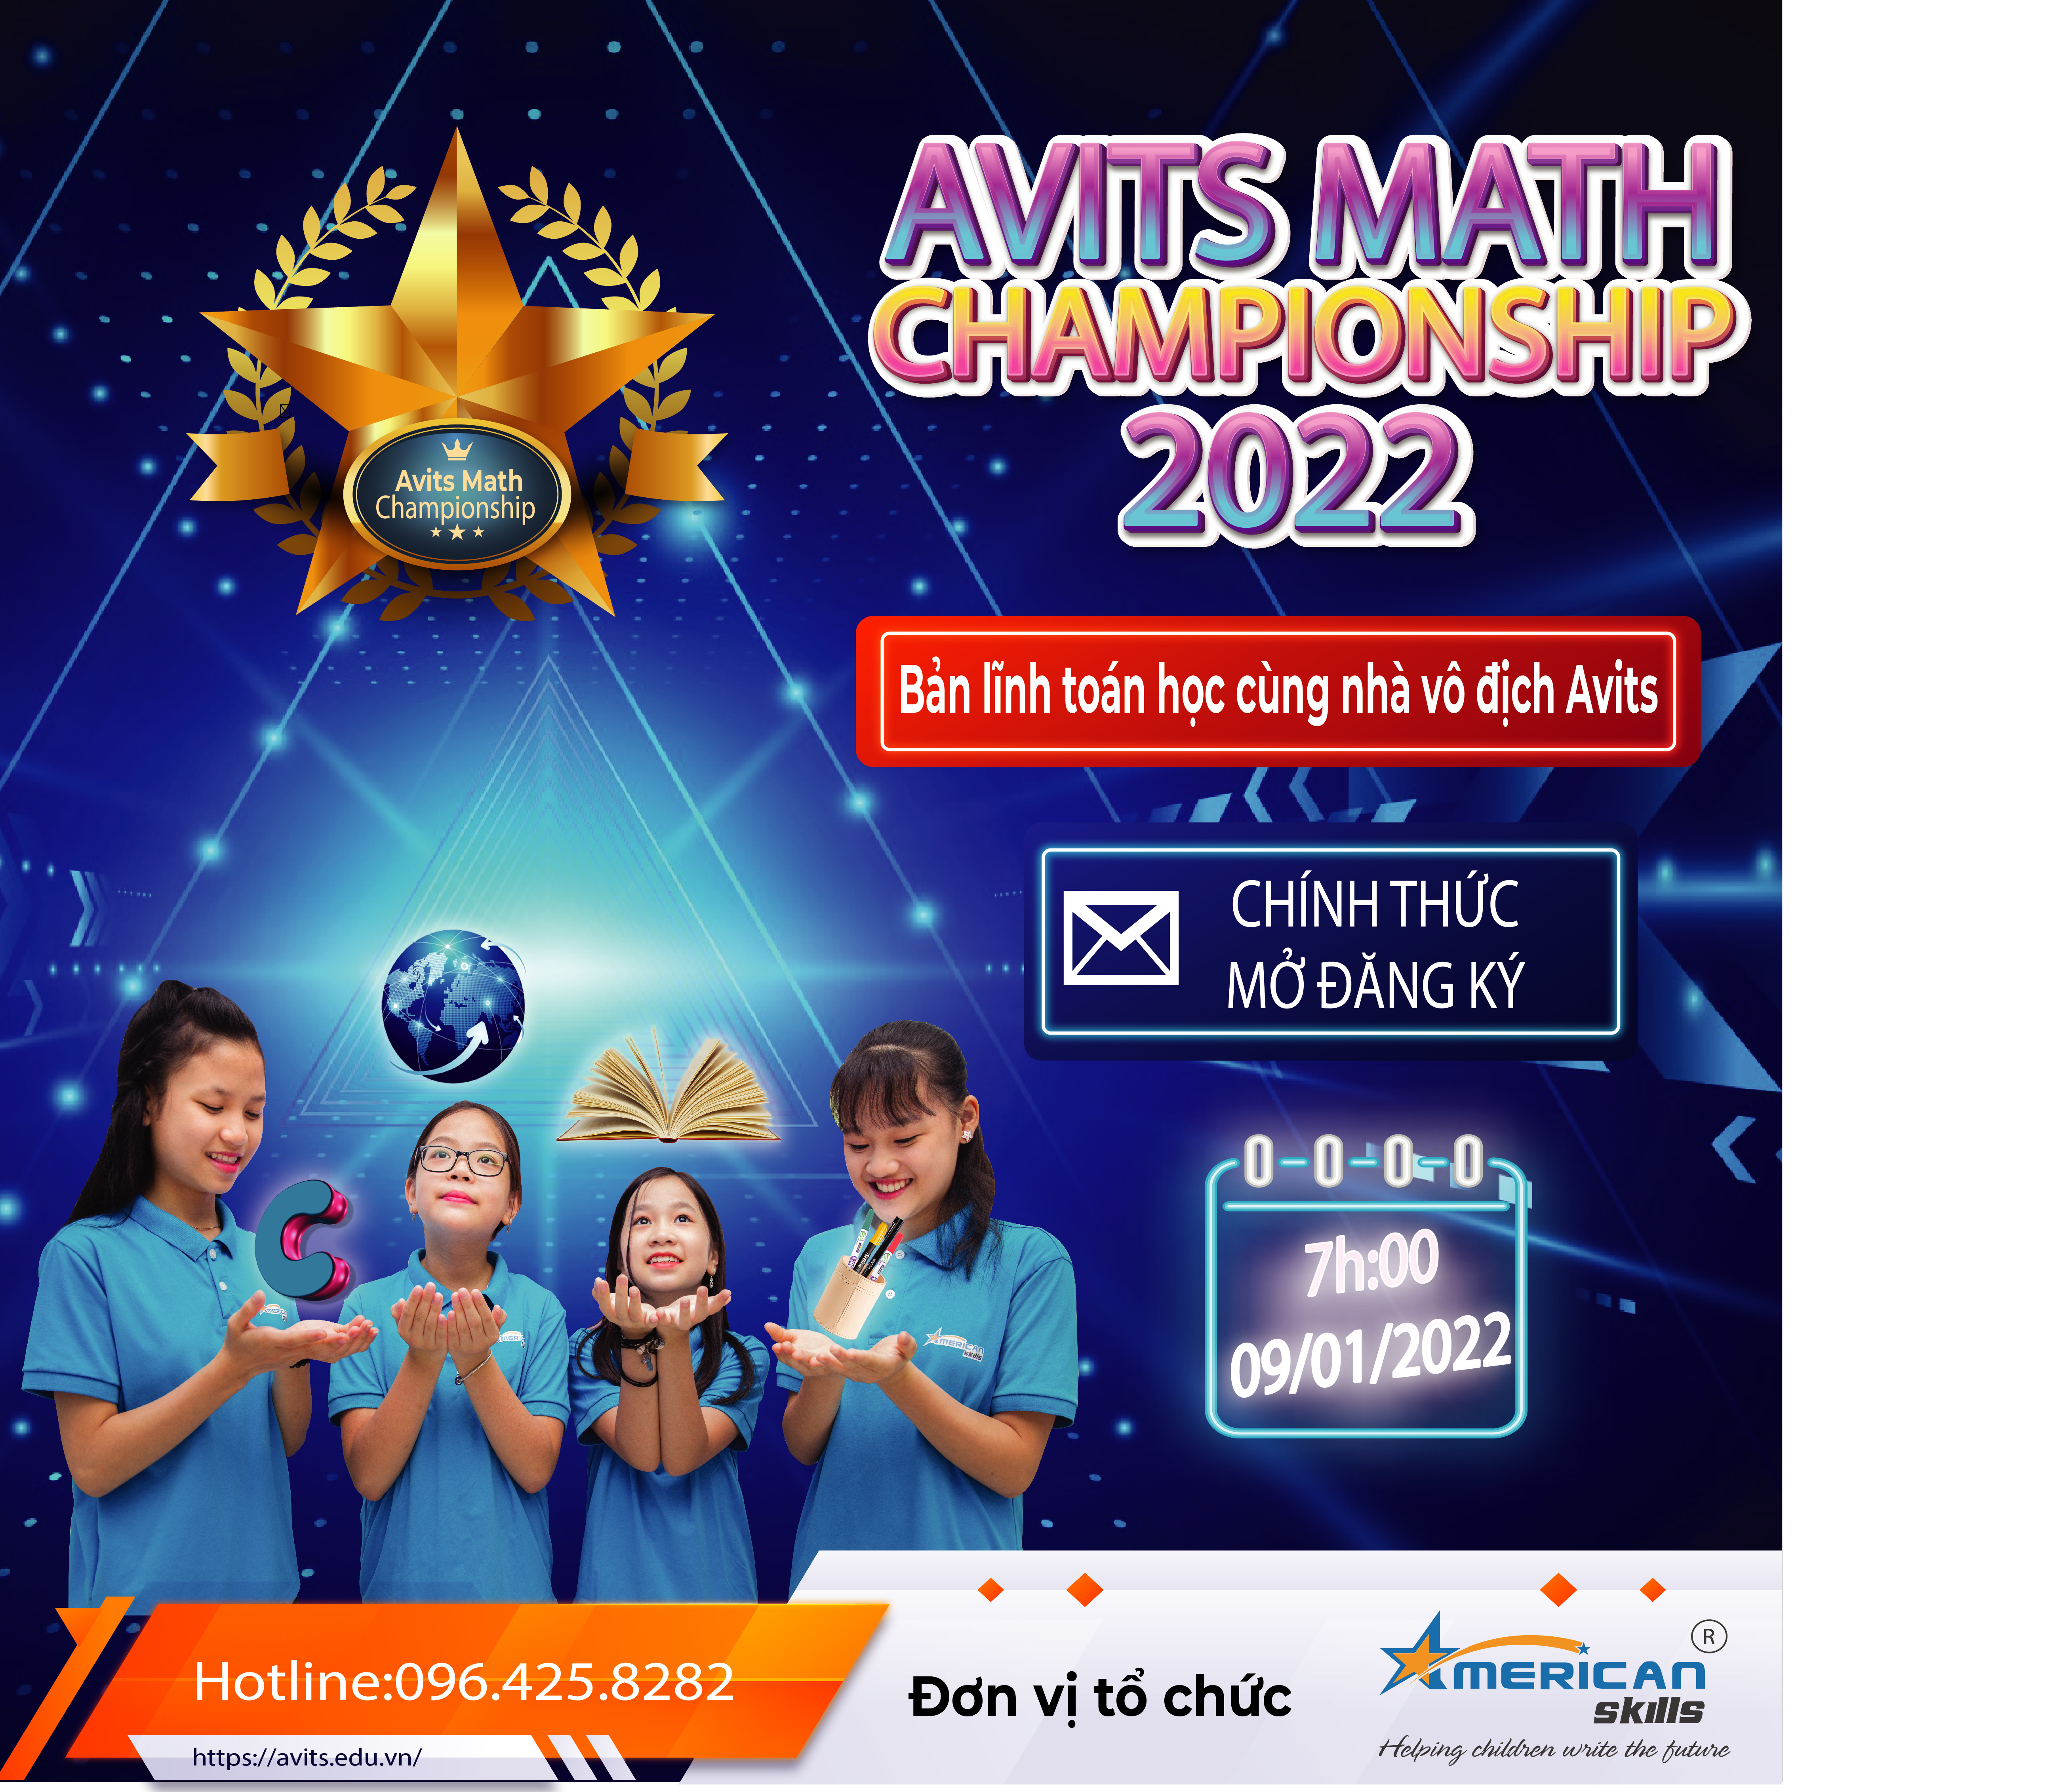 AVITS MATH CHAMPIONSHIP 2022 CHÍNH THỨC MỞ ĐĂNG KÝ TỪ 7G00 SÁNG NGÀY 09/01/2022 tại website : Avits.edu.vn